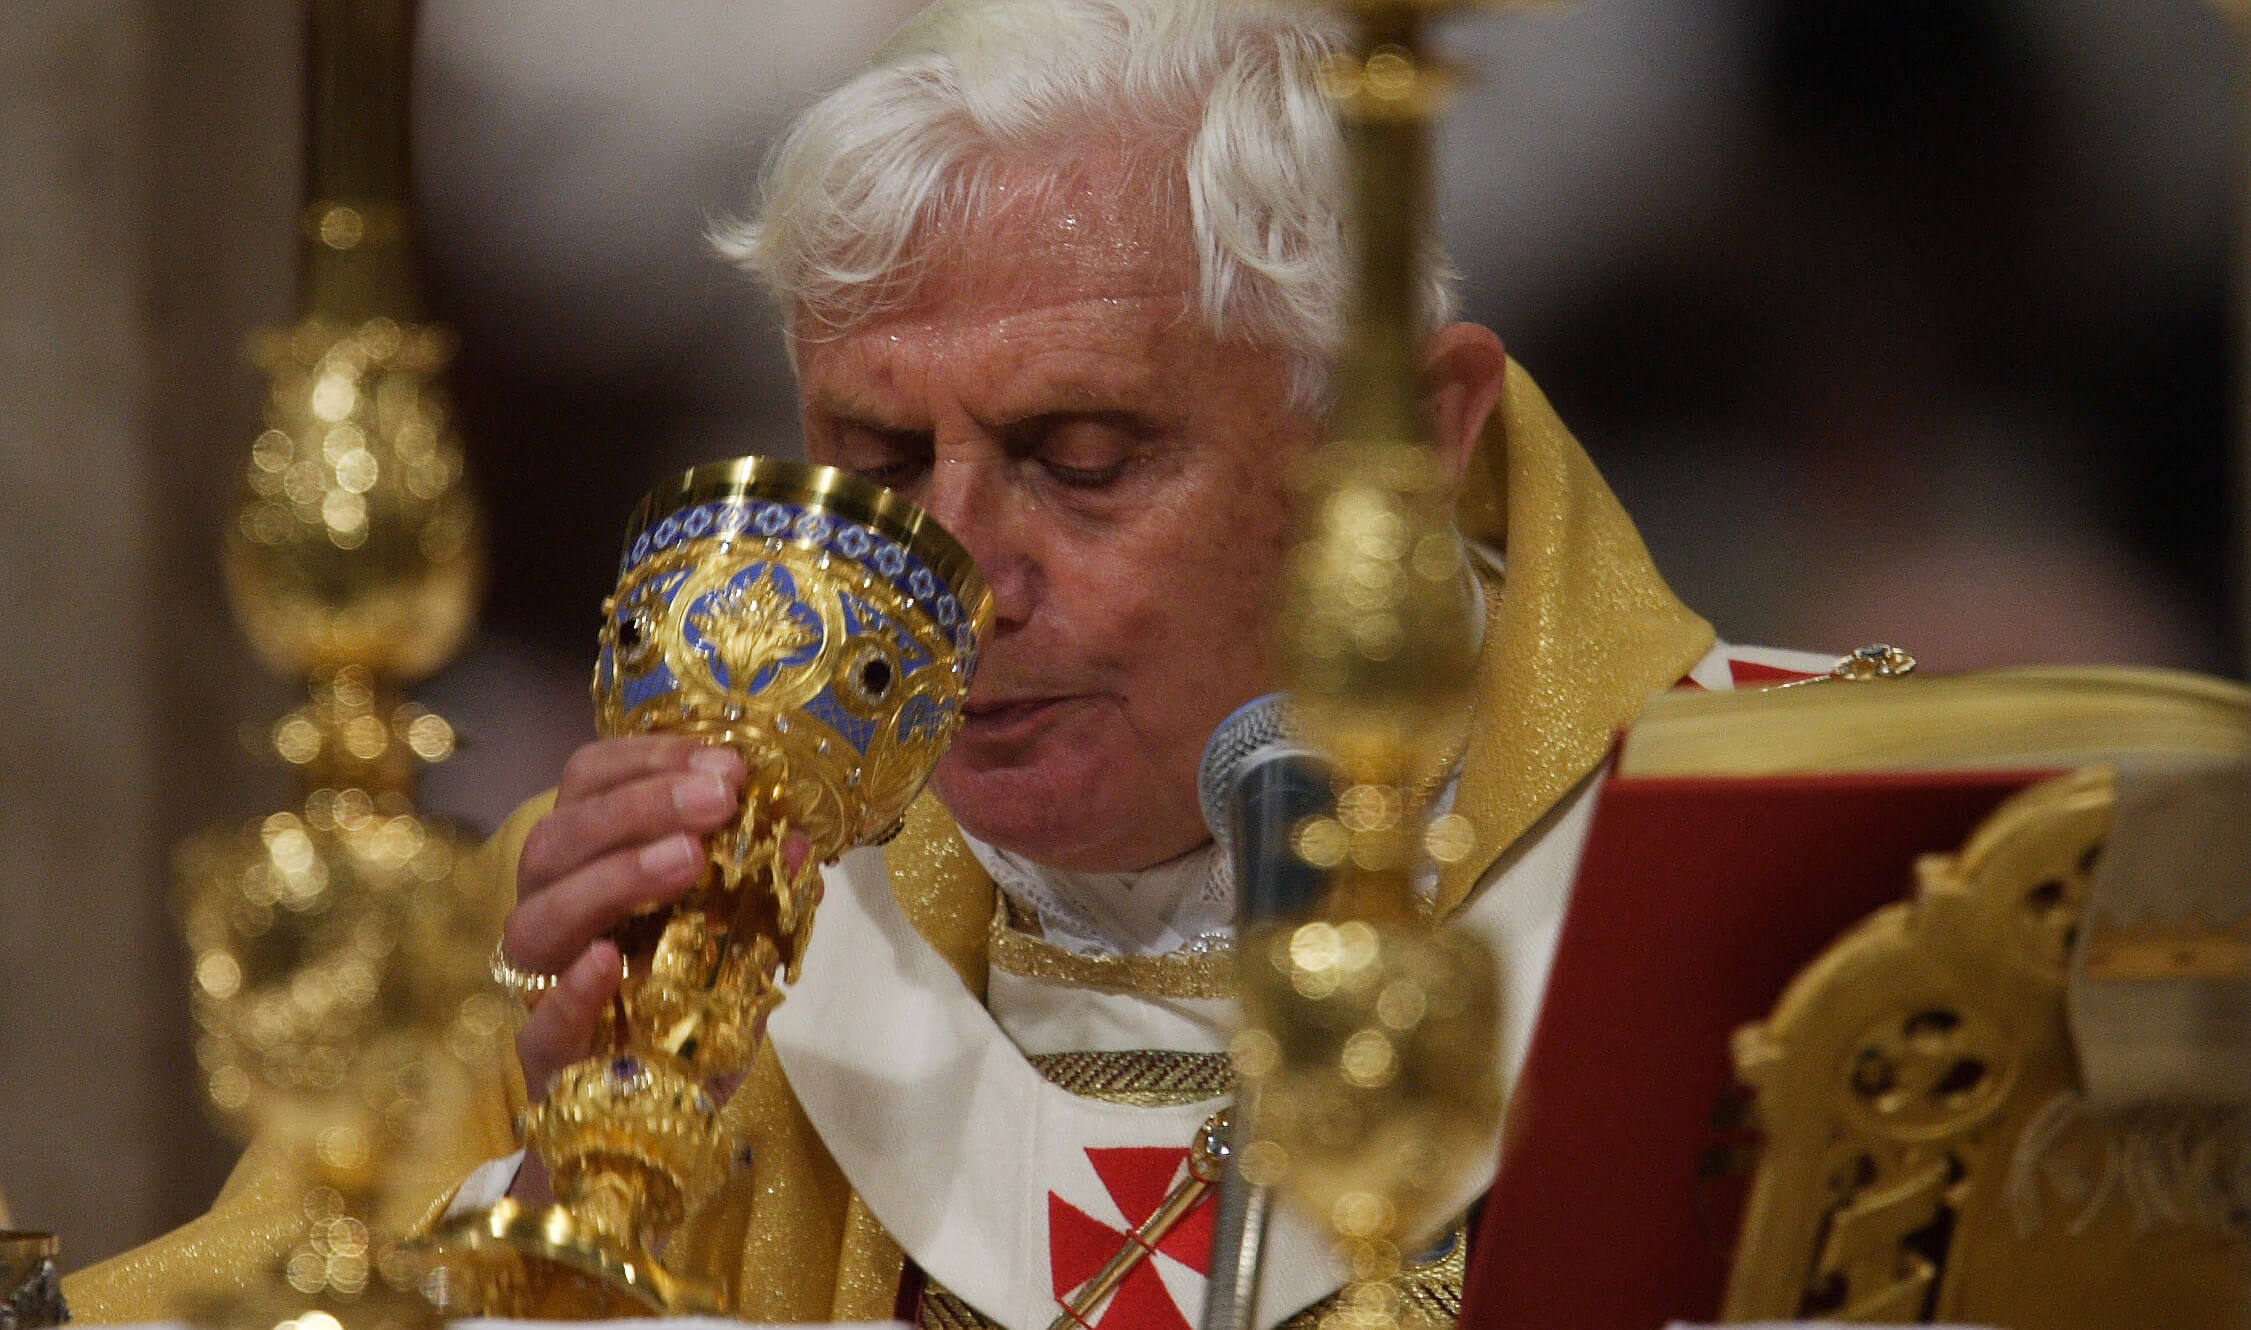 Joseph Kardinal Ratzinger unterschrieb einen Brief als Präfekt der Glaubenskongregation, der einem Missbrauchspriester erlaubte, Messfeiern mit Traubensaft zu feiern.